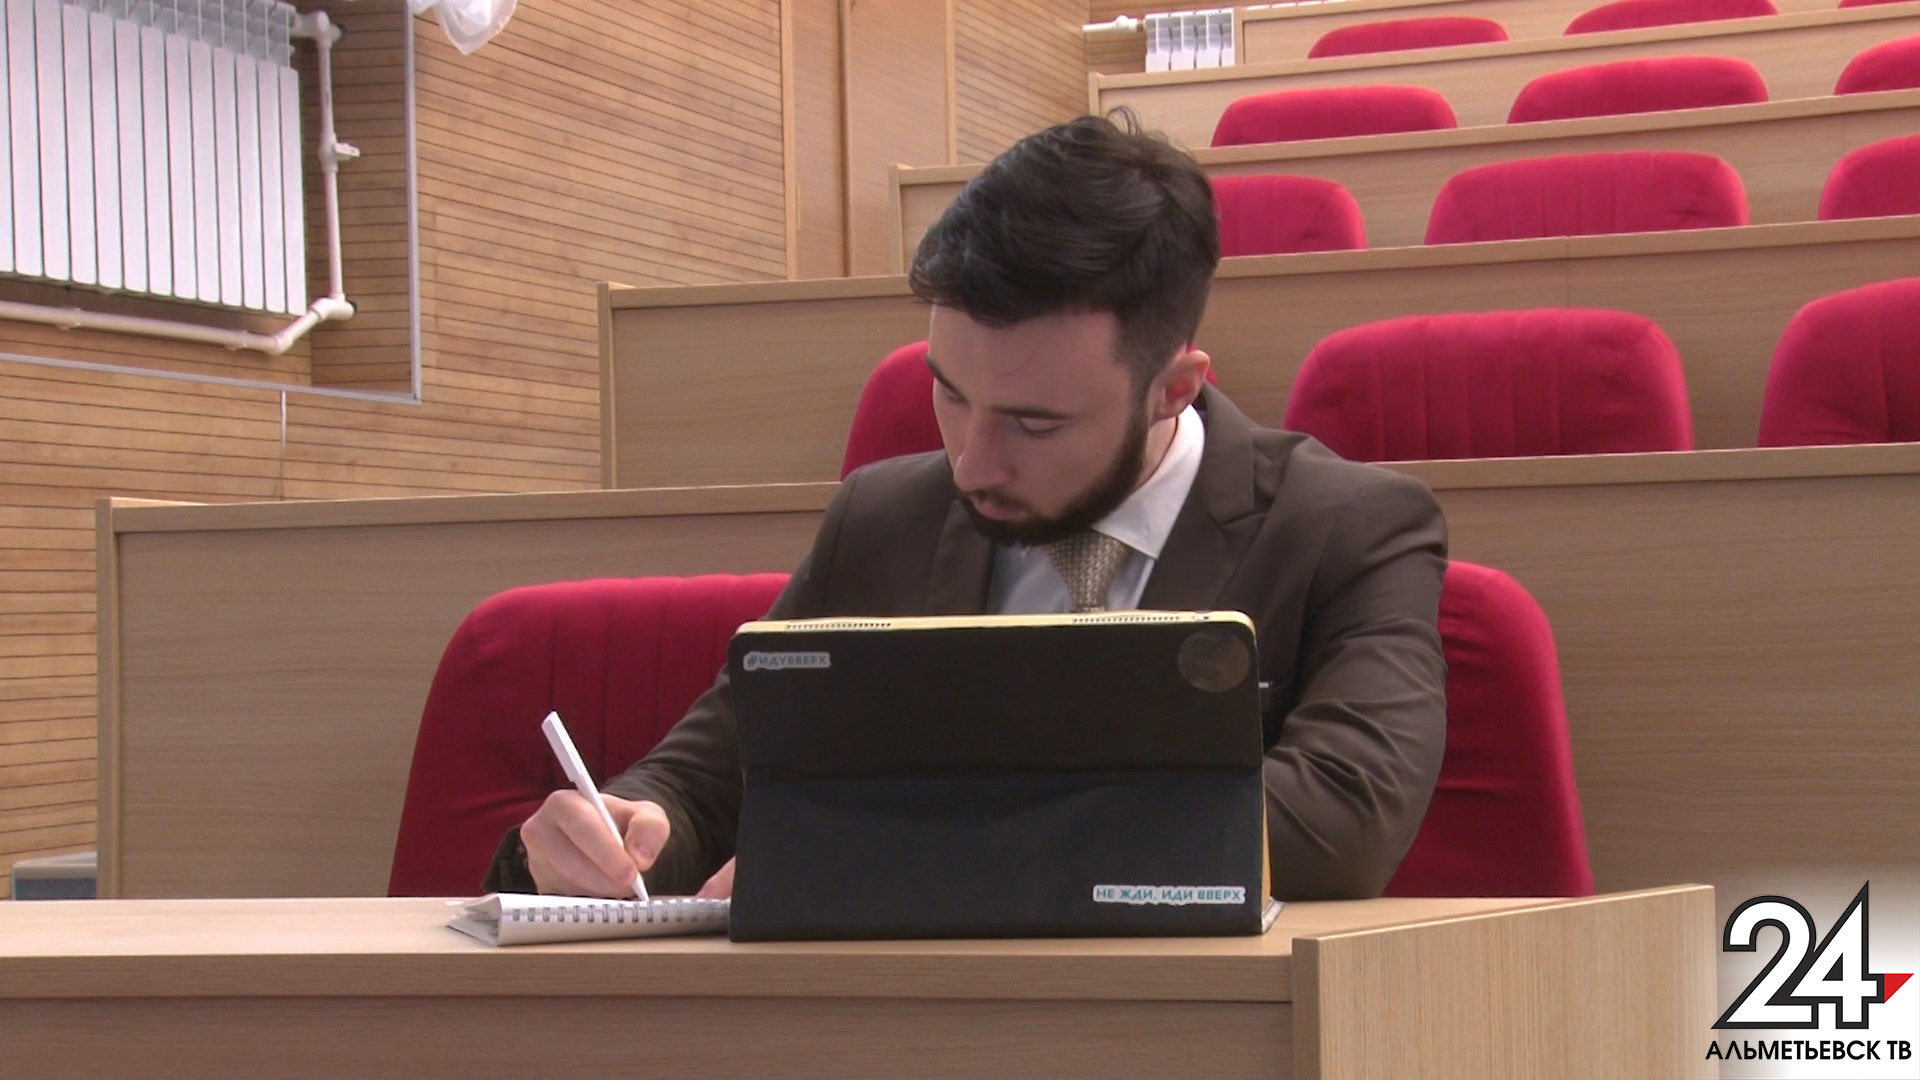 26 альметьевцев отправили заявки в муниципальный молодежный парламент